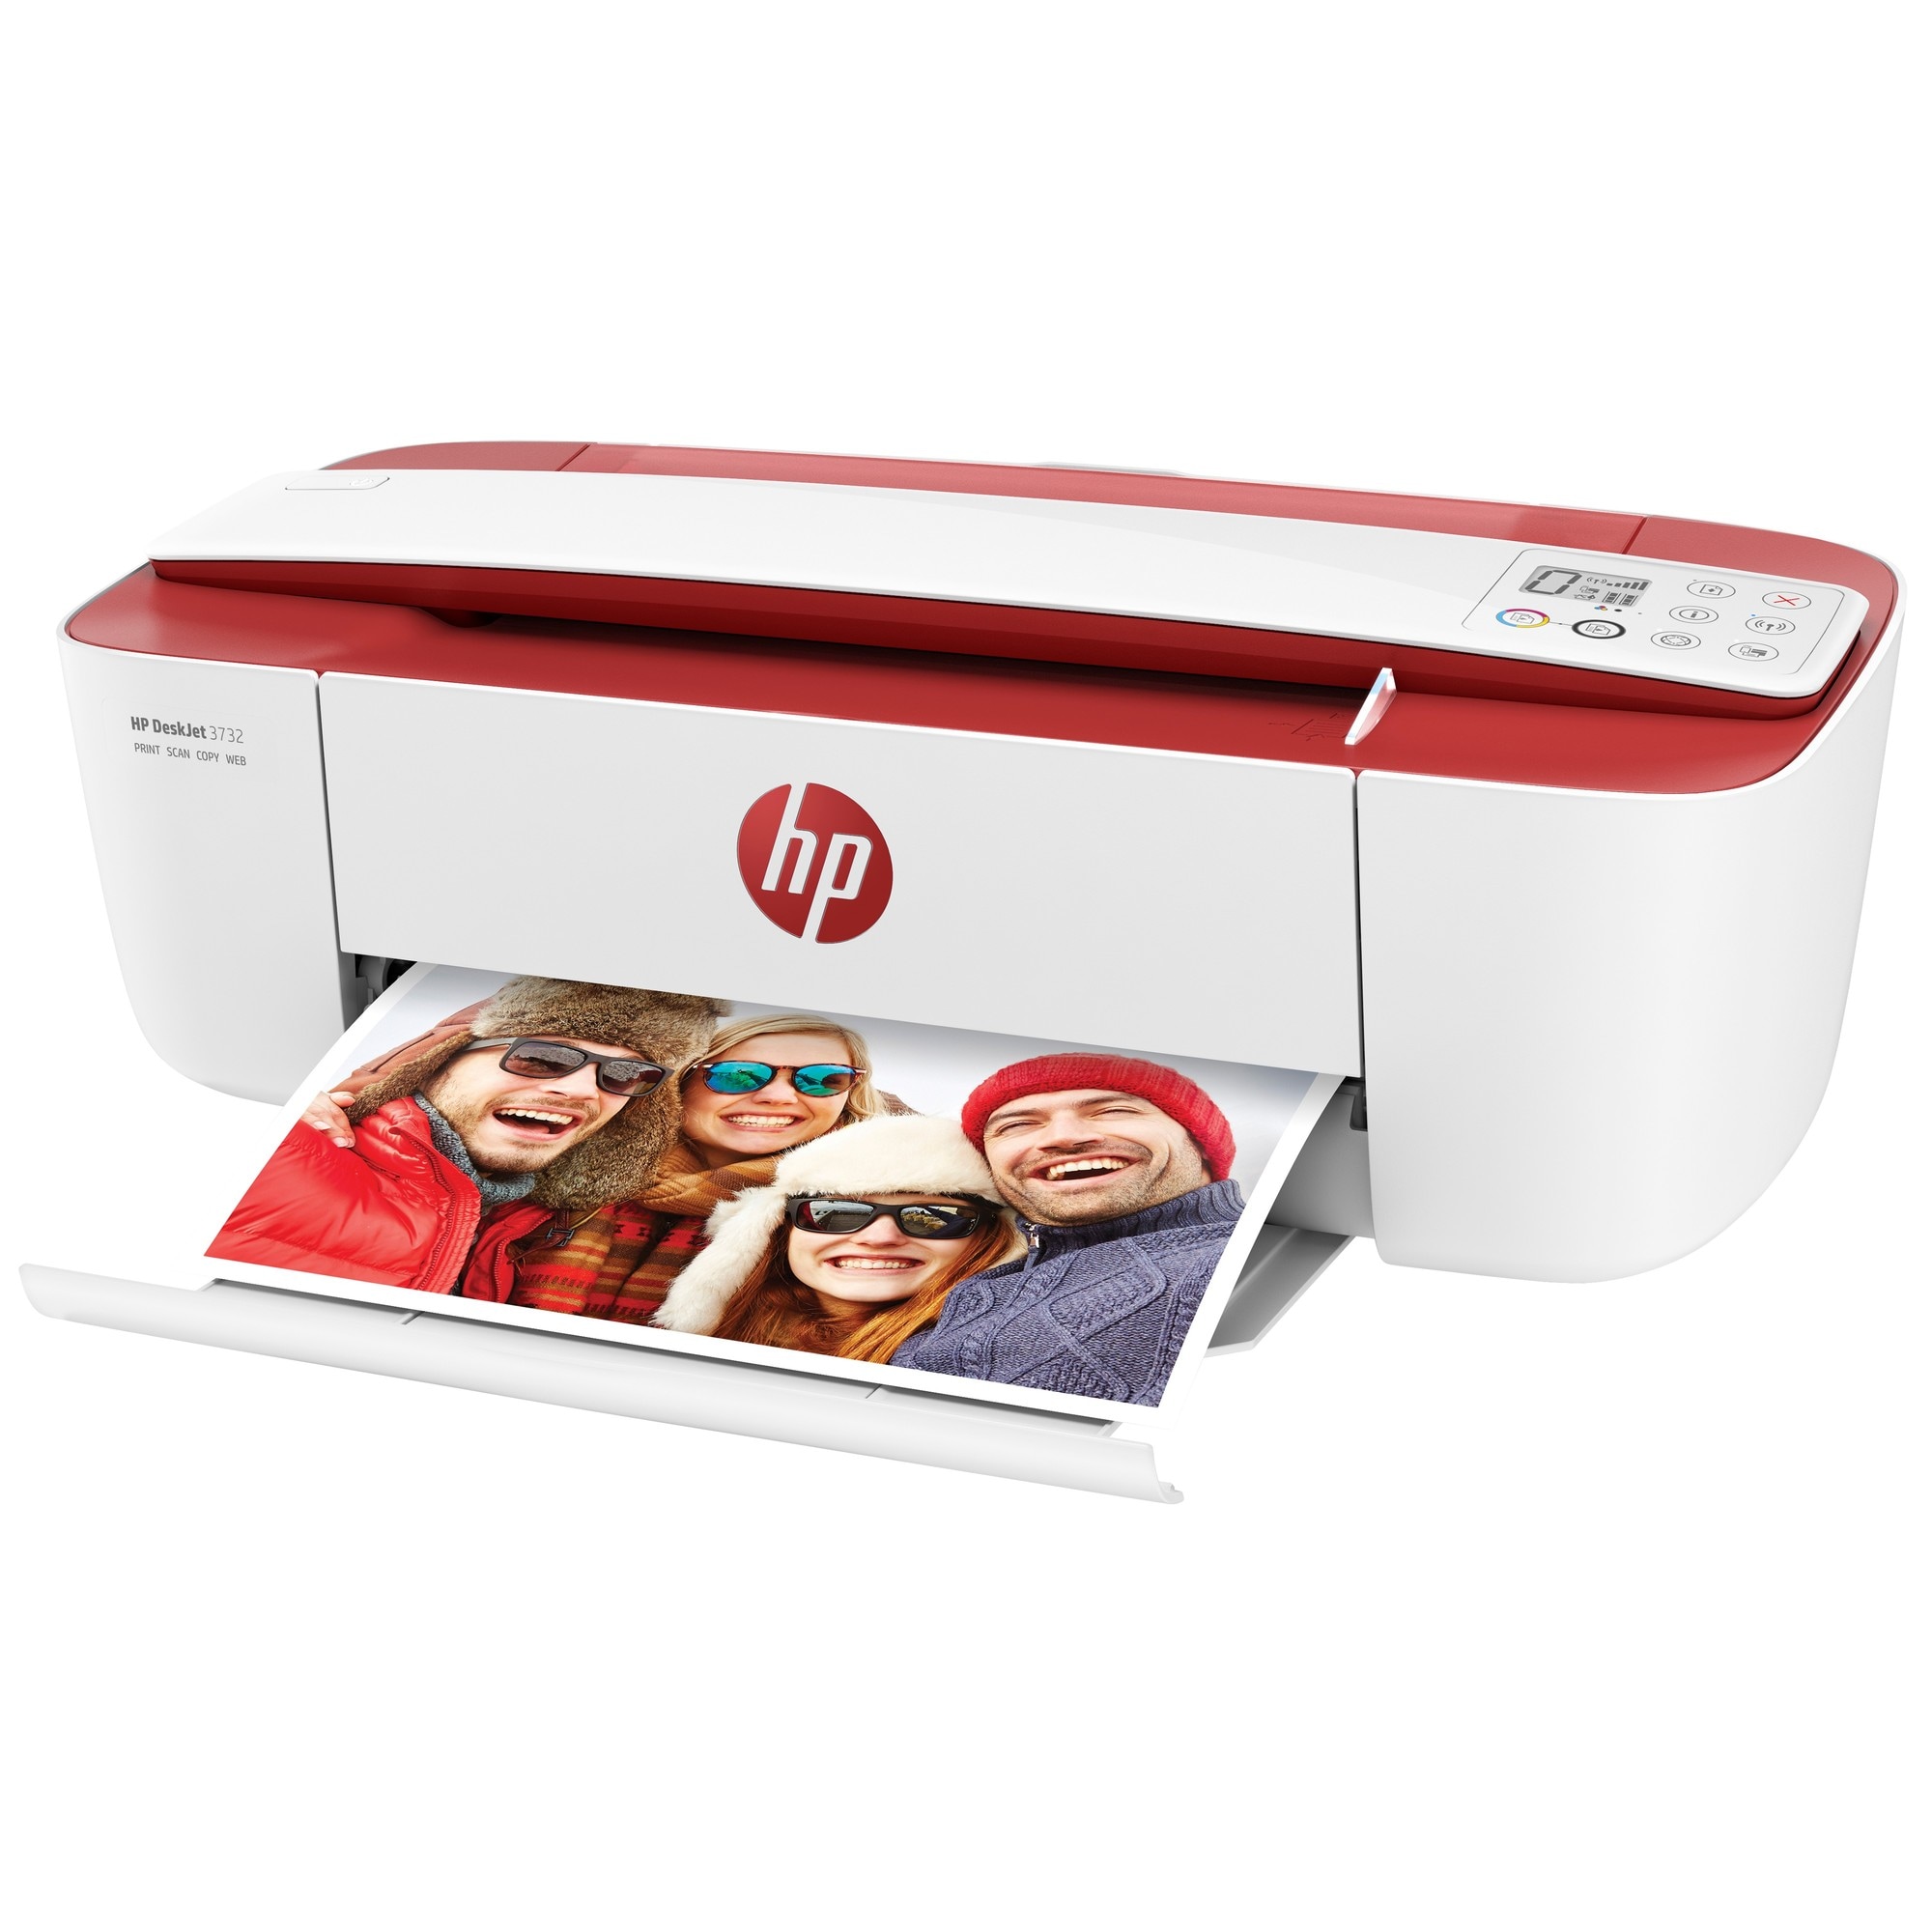 HP DeskJet 3732 AIO inkjet farveprinter - rød/hvid | Elgiganten